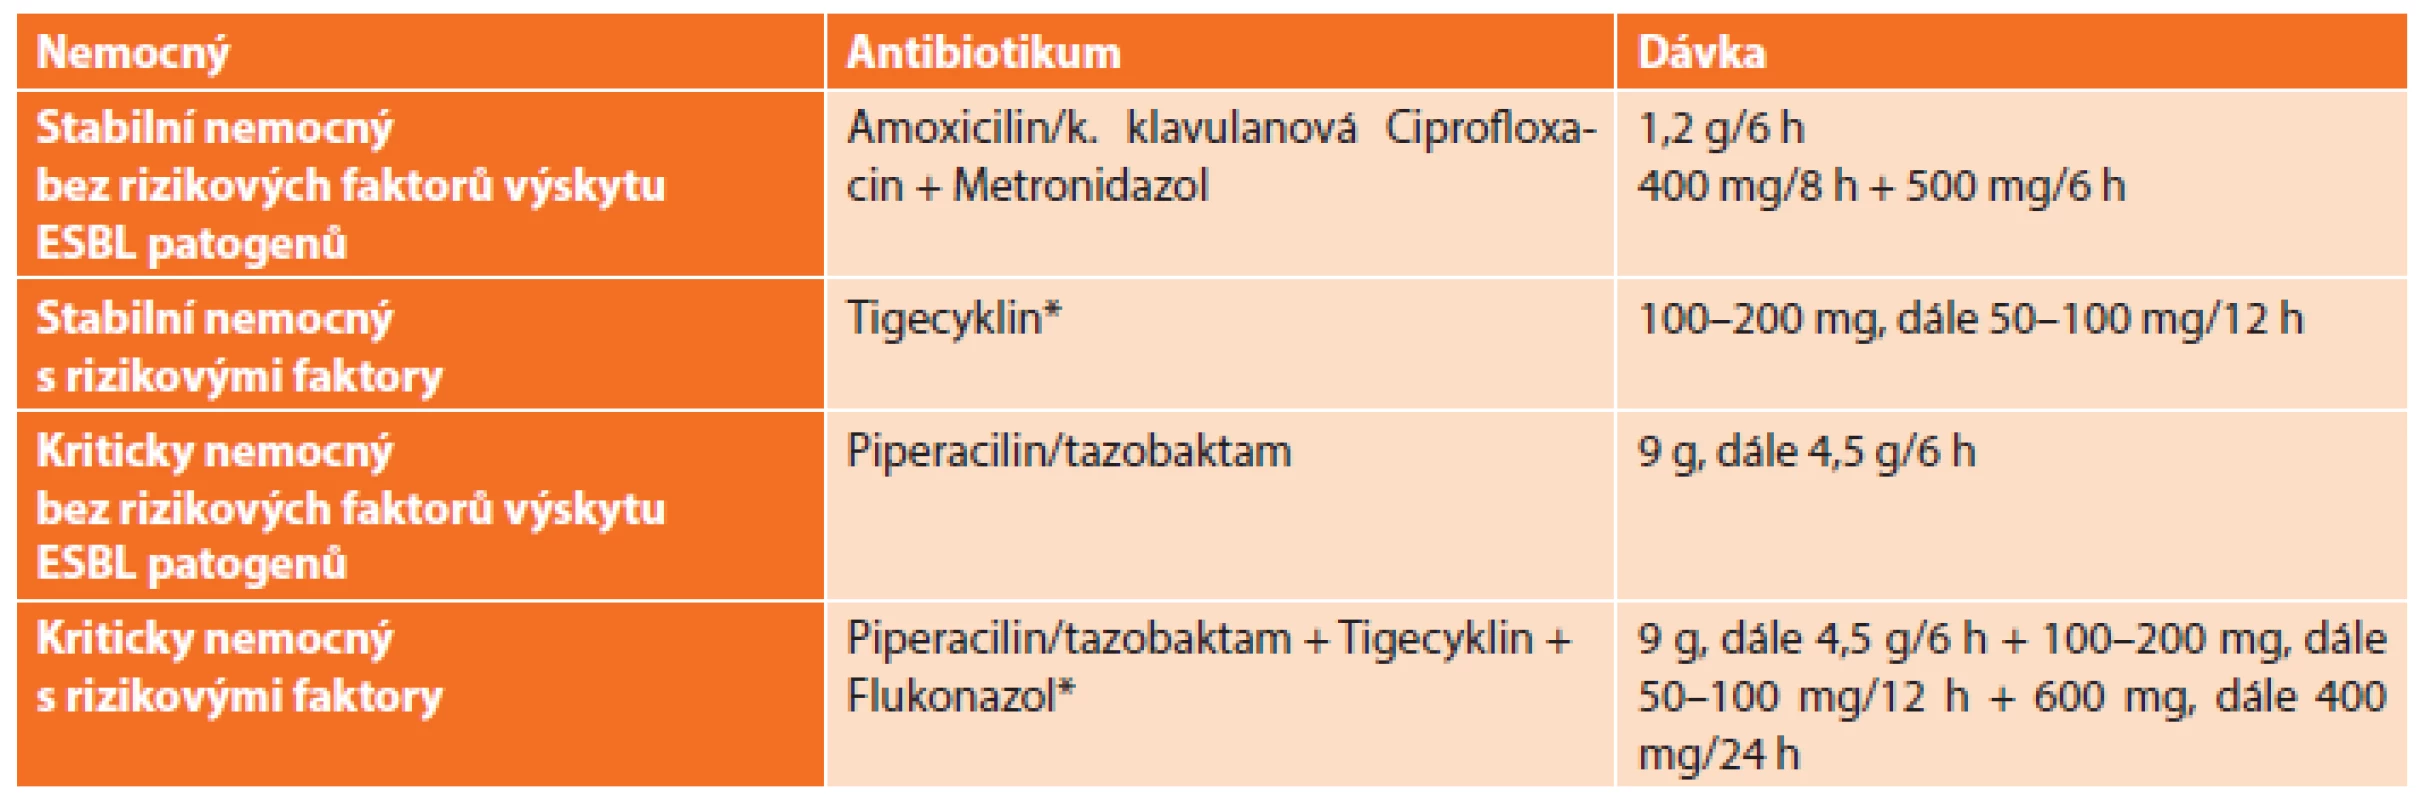 Antimikrobní režim doporučený WSES pro léčbu biliárních infekcí
Tab. 3: Antimicrobial regimen recommended by WSES for management of biliary infections